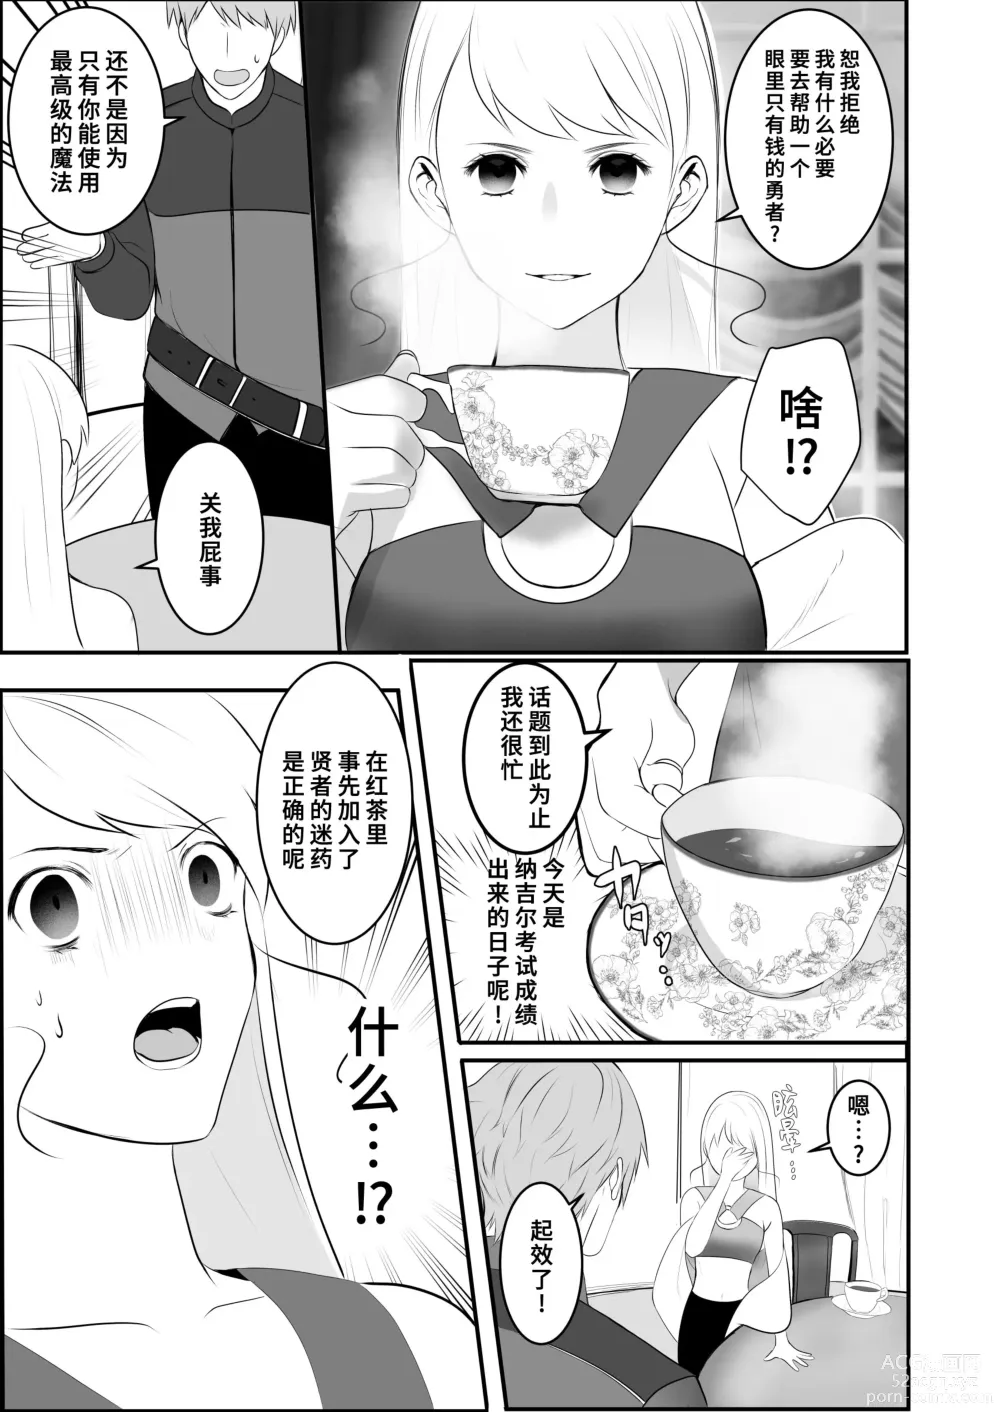 Page 30 of doujinshi 原天才魔法士被敌对死灵法师死缠烂打不放手